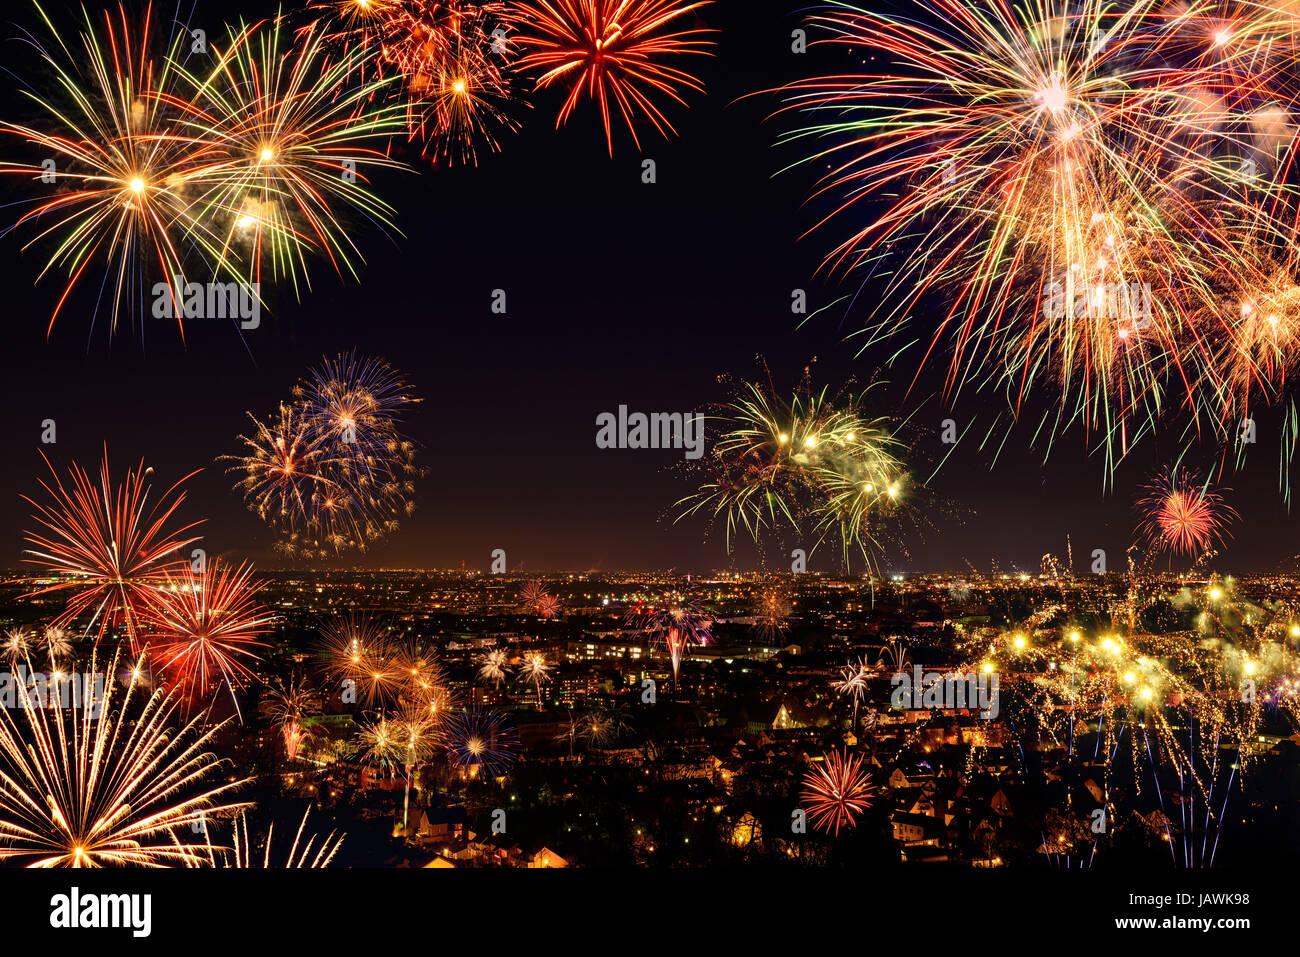 Buntes Lebhaftes Feuerwerk über einer Stadt, gesehen von oben Banque D'Images